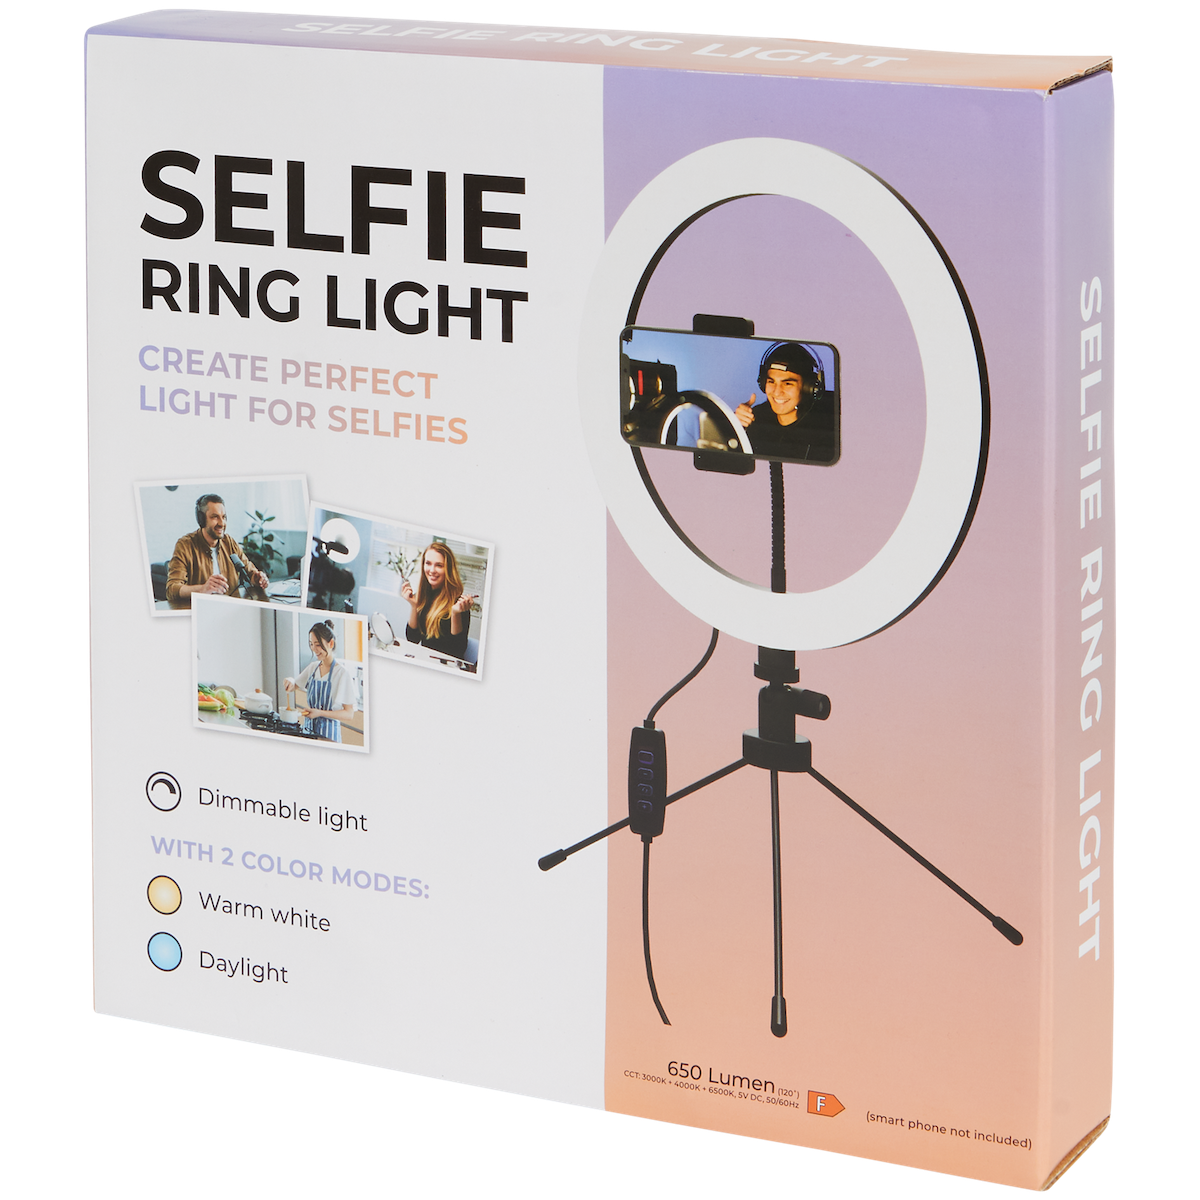 Selfie-Ringlicht mit Stativ

650lm - DeinMarkt.at 